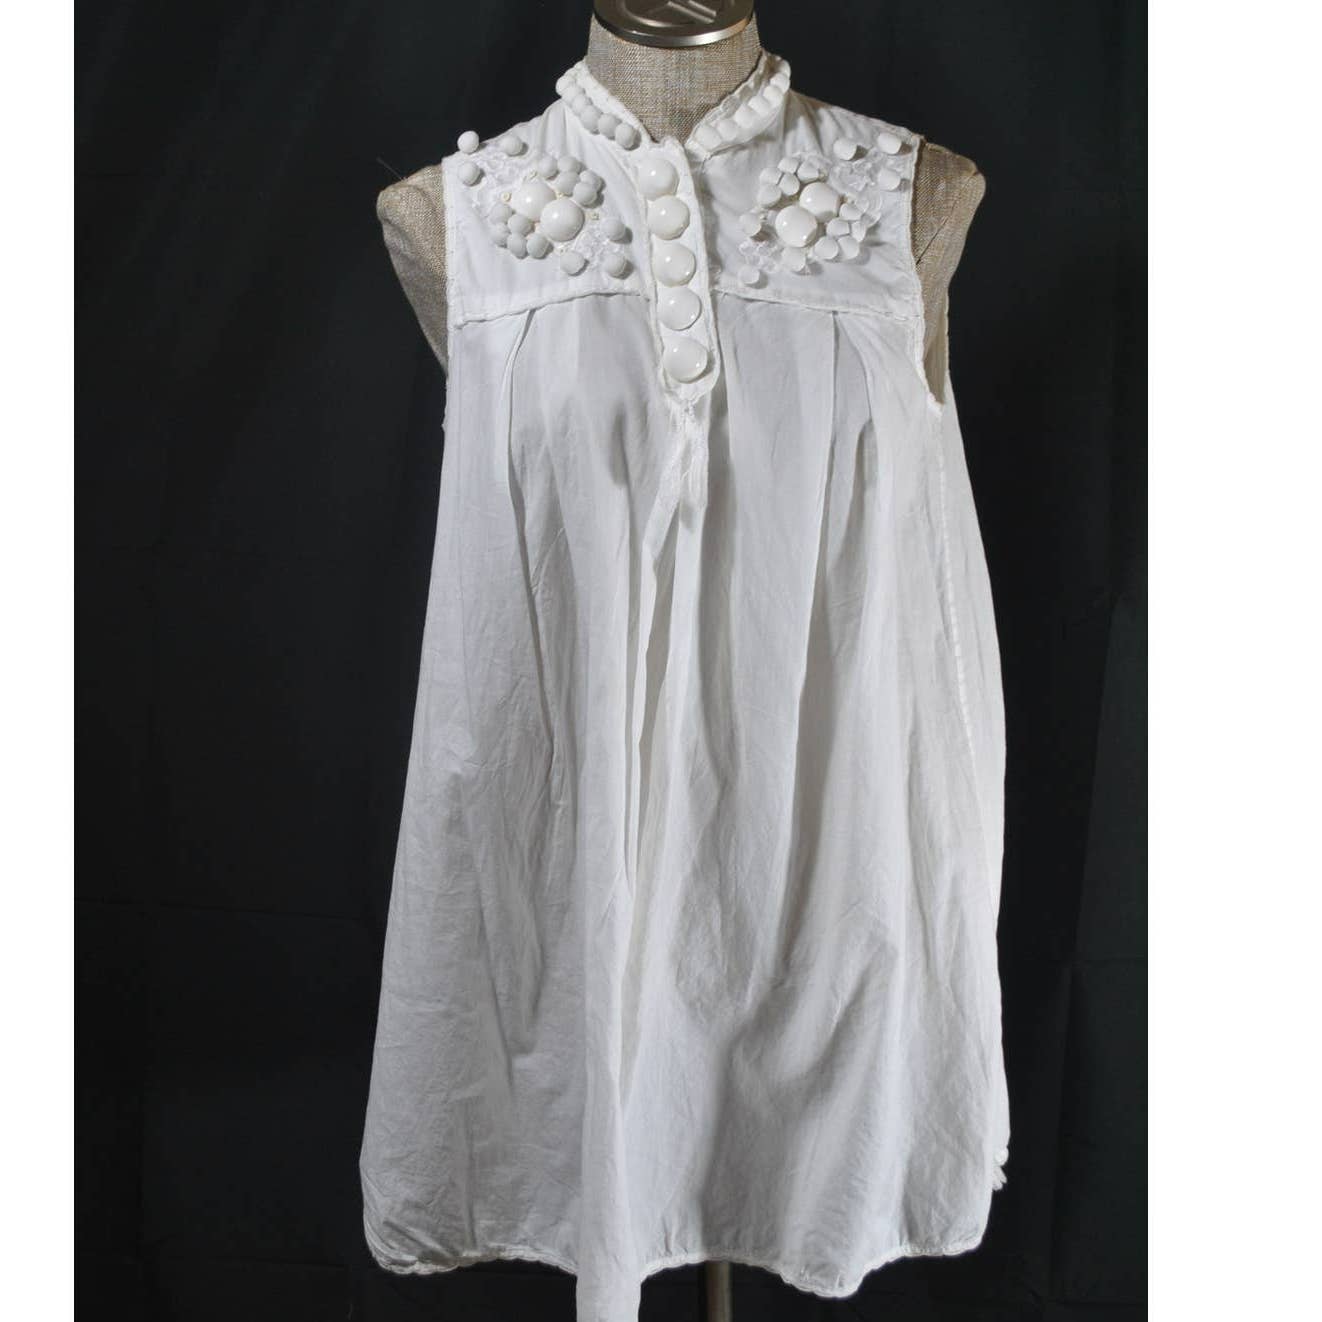 Malene Birger White Embellished Tunic Top - 38  / Medium